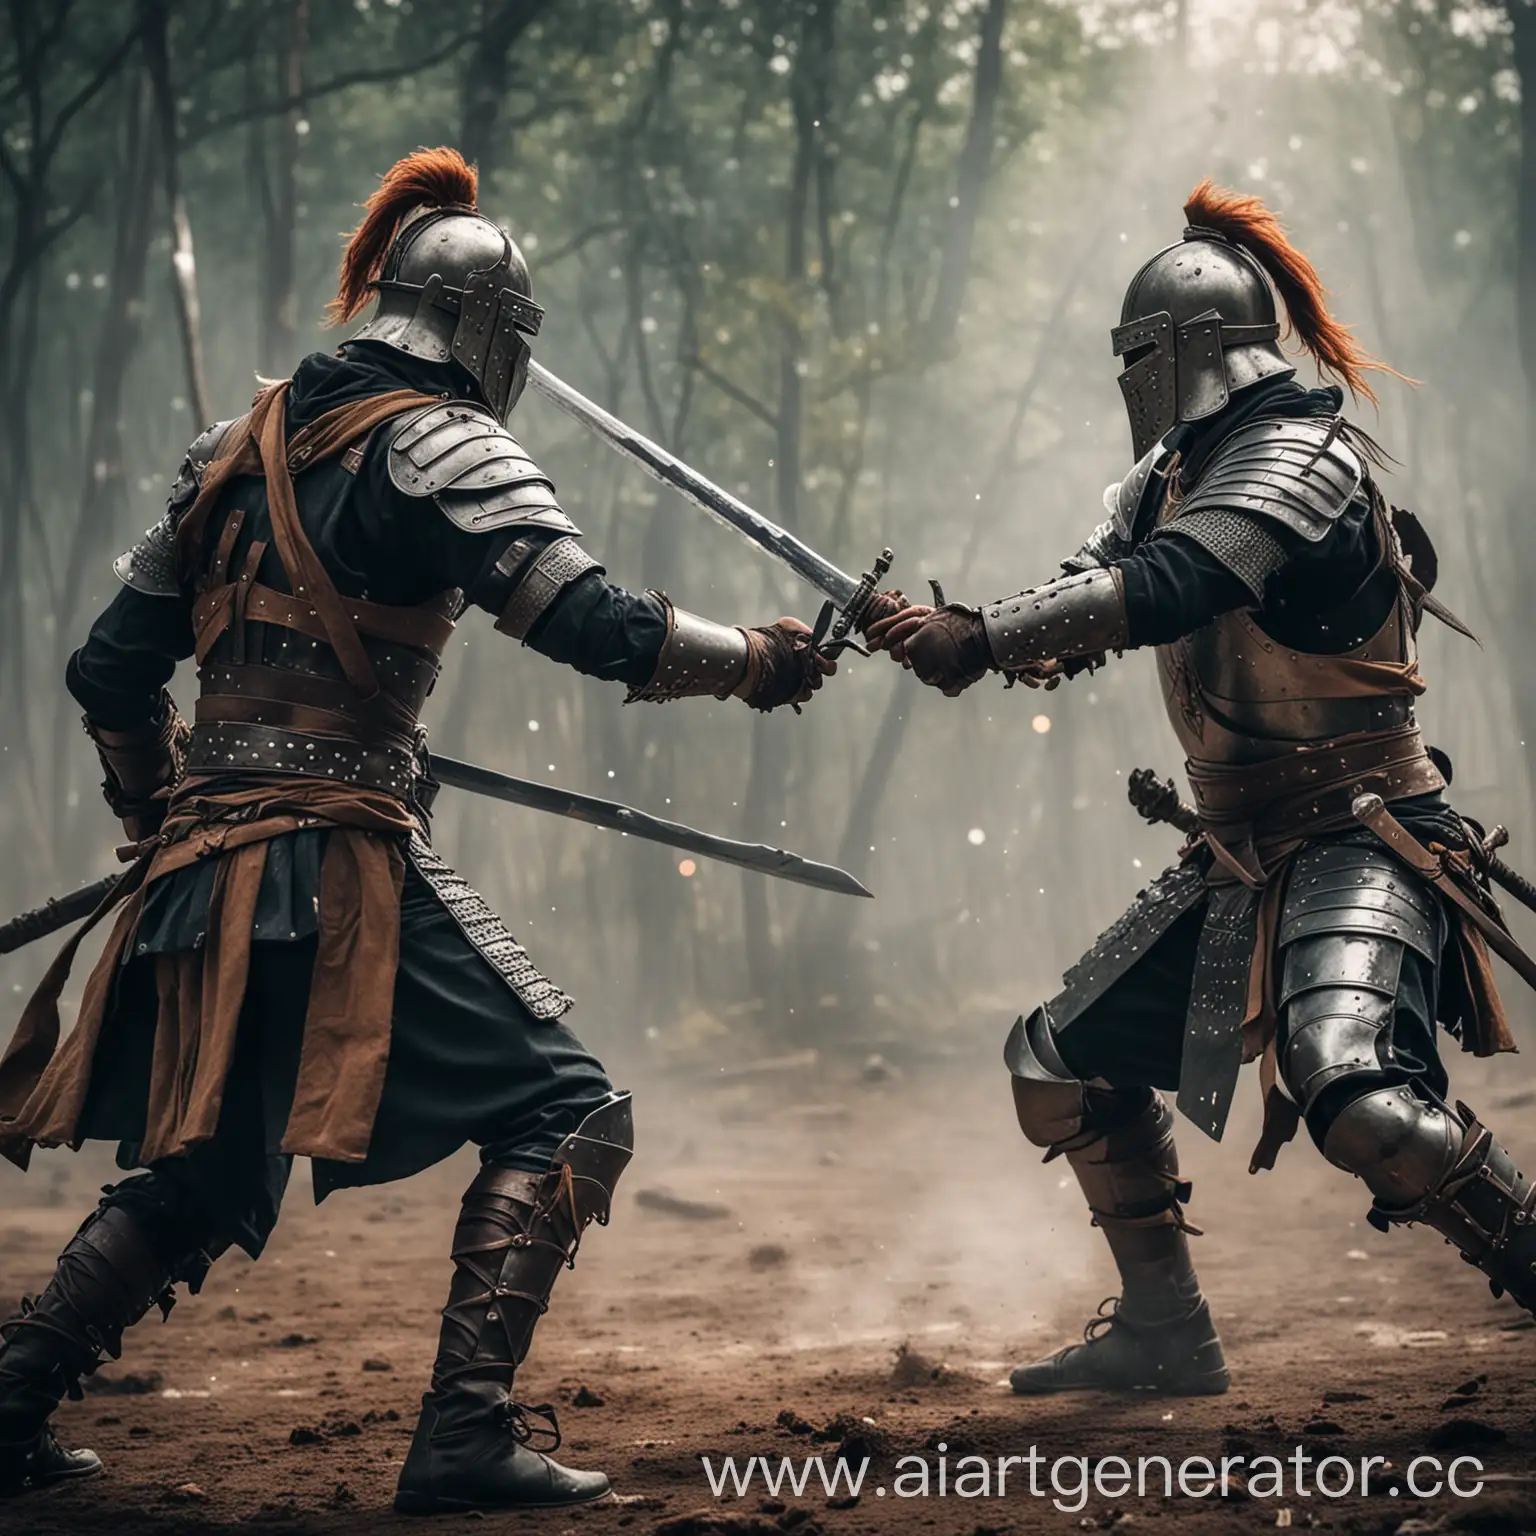 Два воина в латных доспехах сражаются на мечах